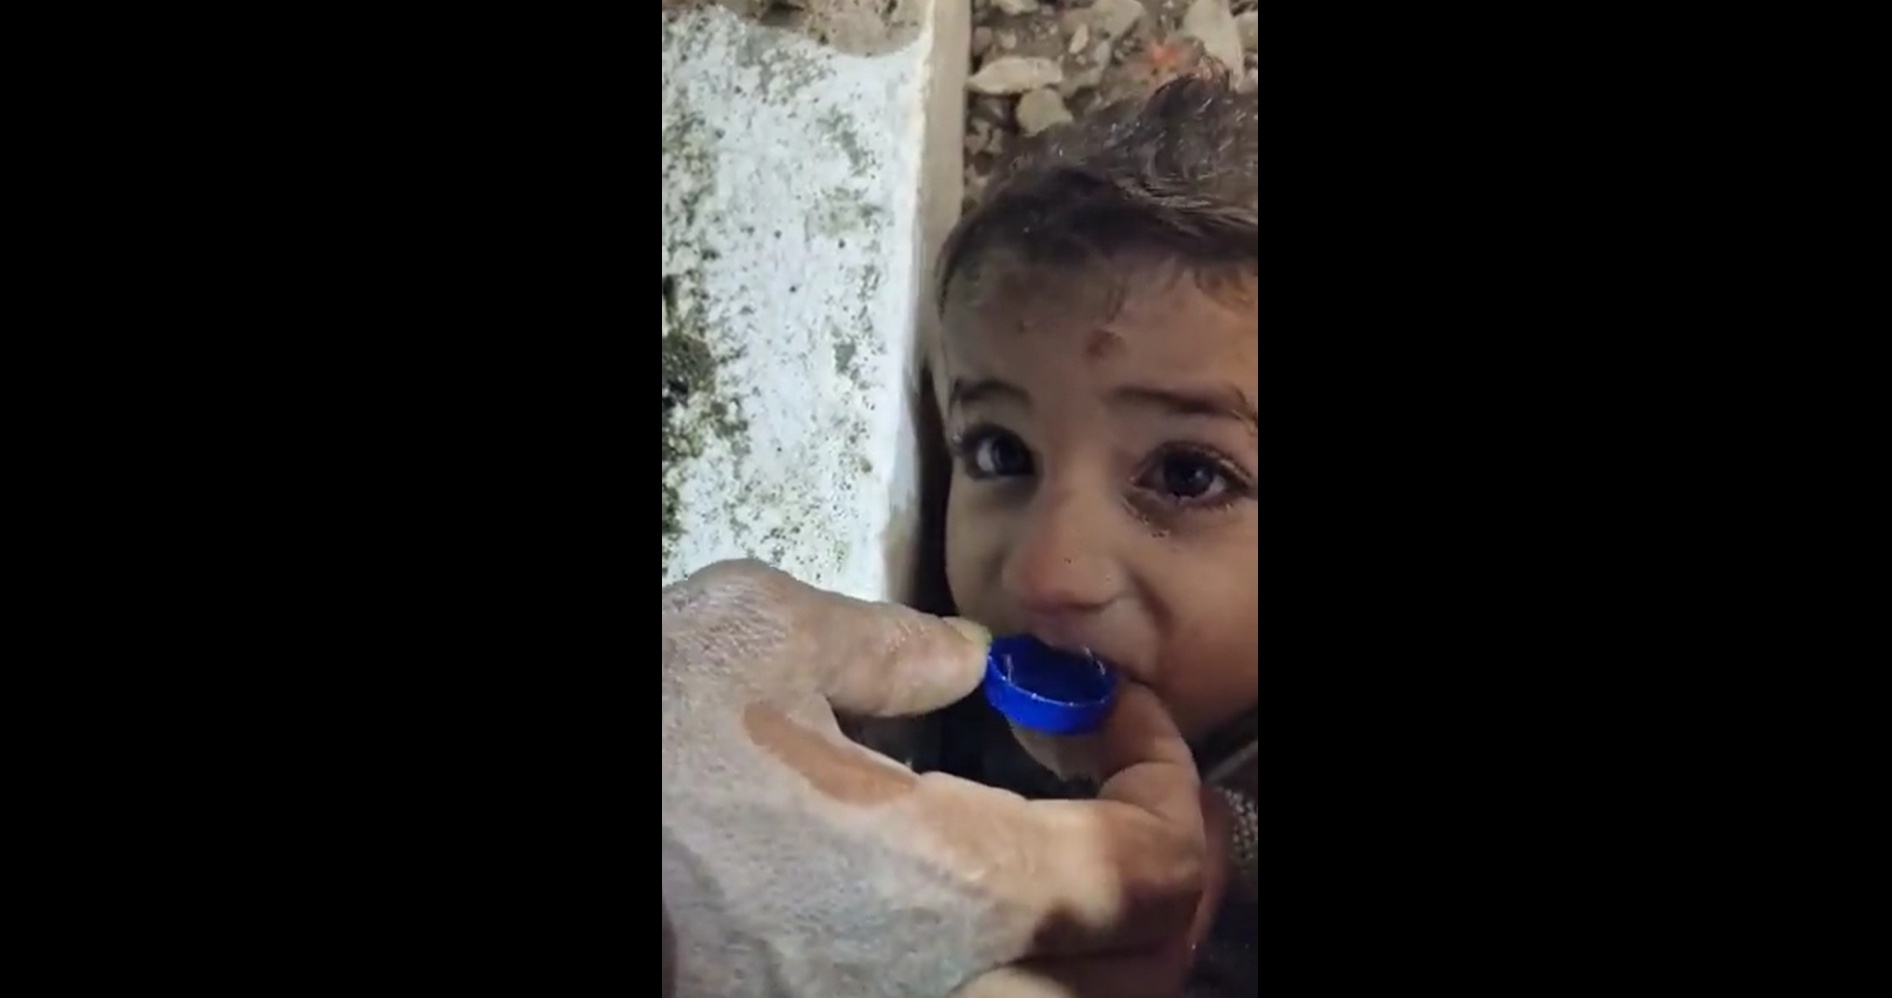 Σεισμός στην Τουρκία: Διασώστες δίνουν νερό με καπάκι σε παιδί κάτω από τα χαλάσματα (βίντεο)